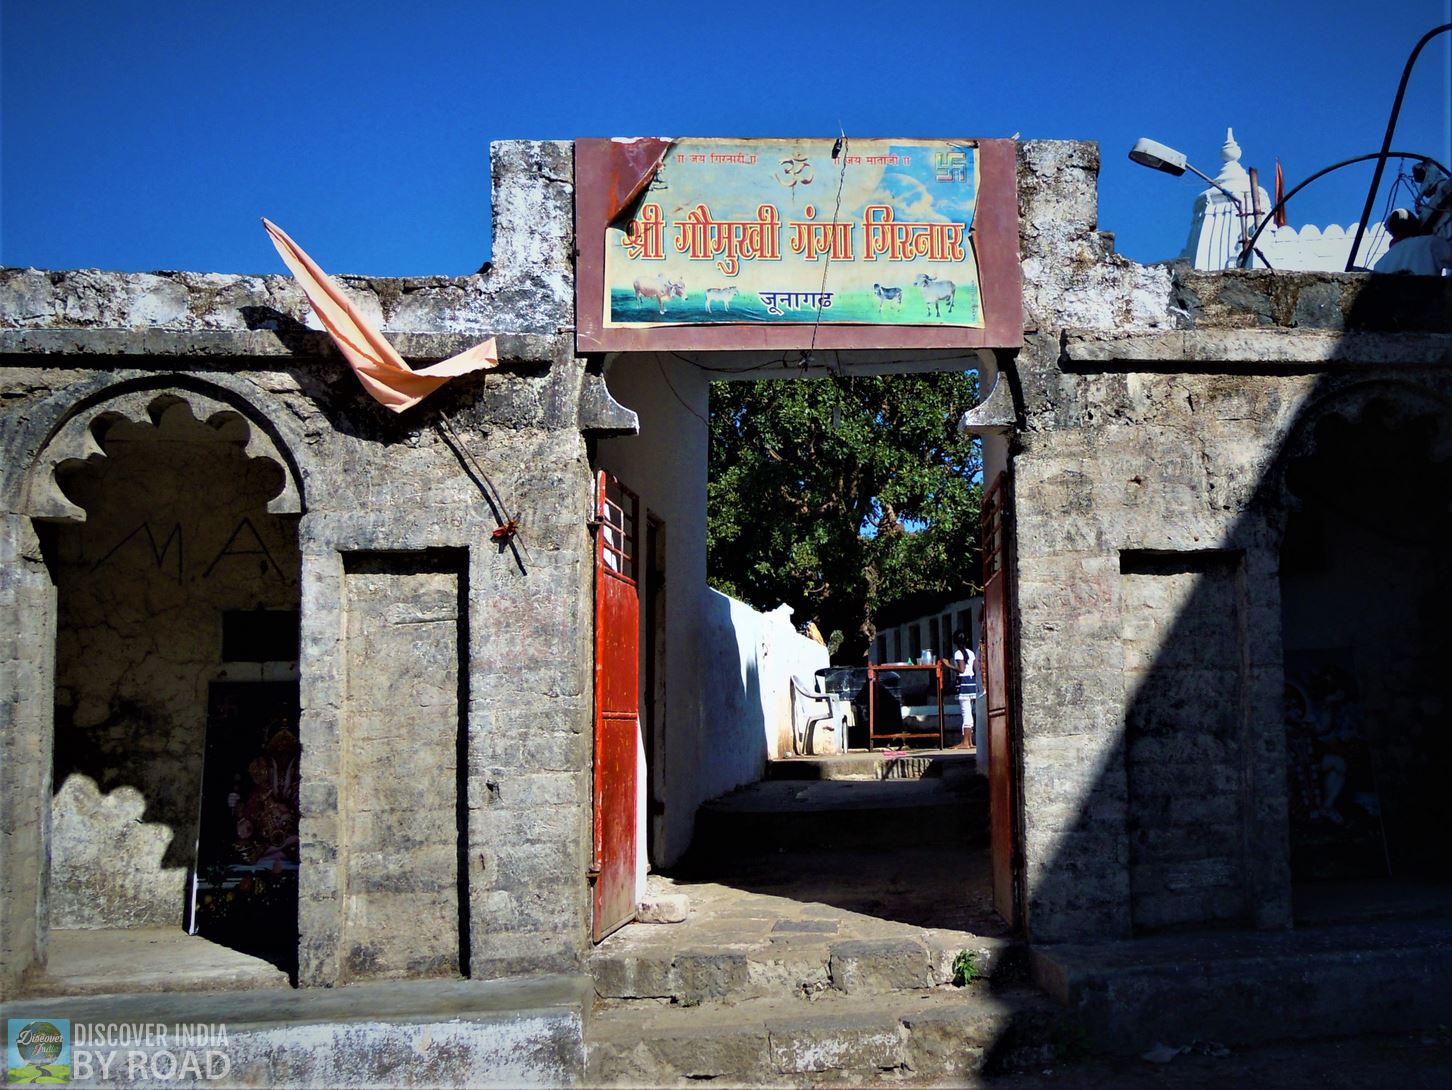 Goumukhi Ganga sign board during trek to girnar